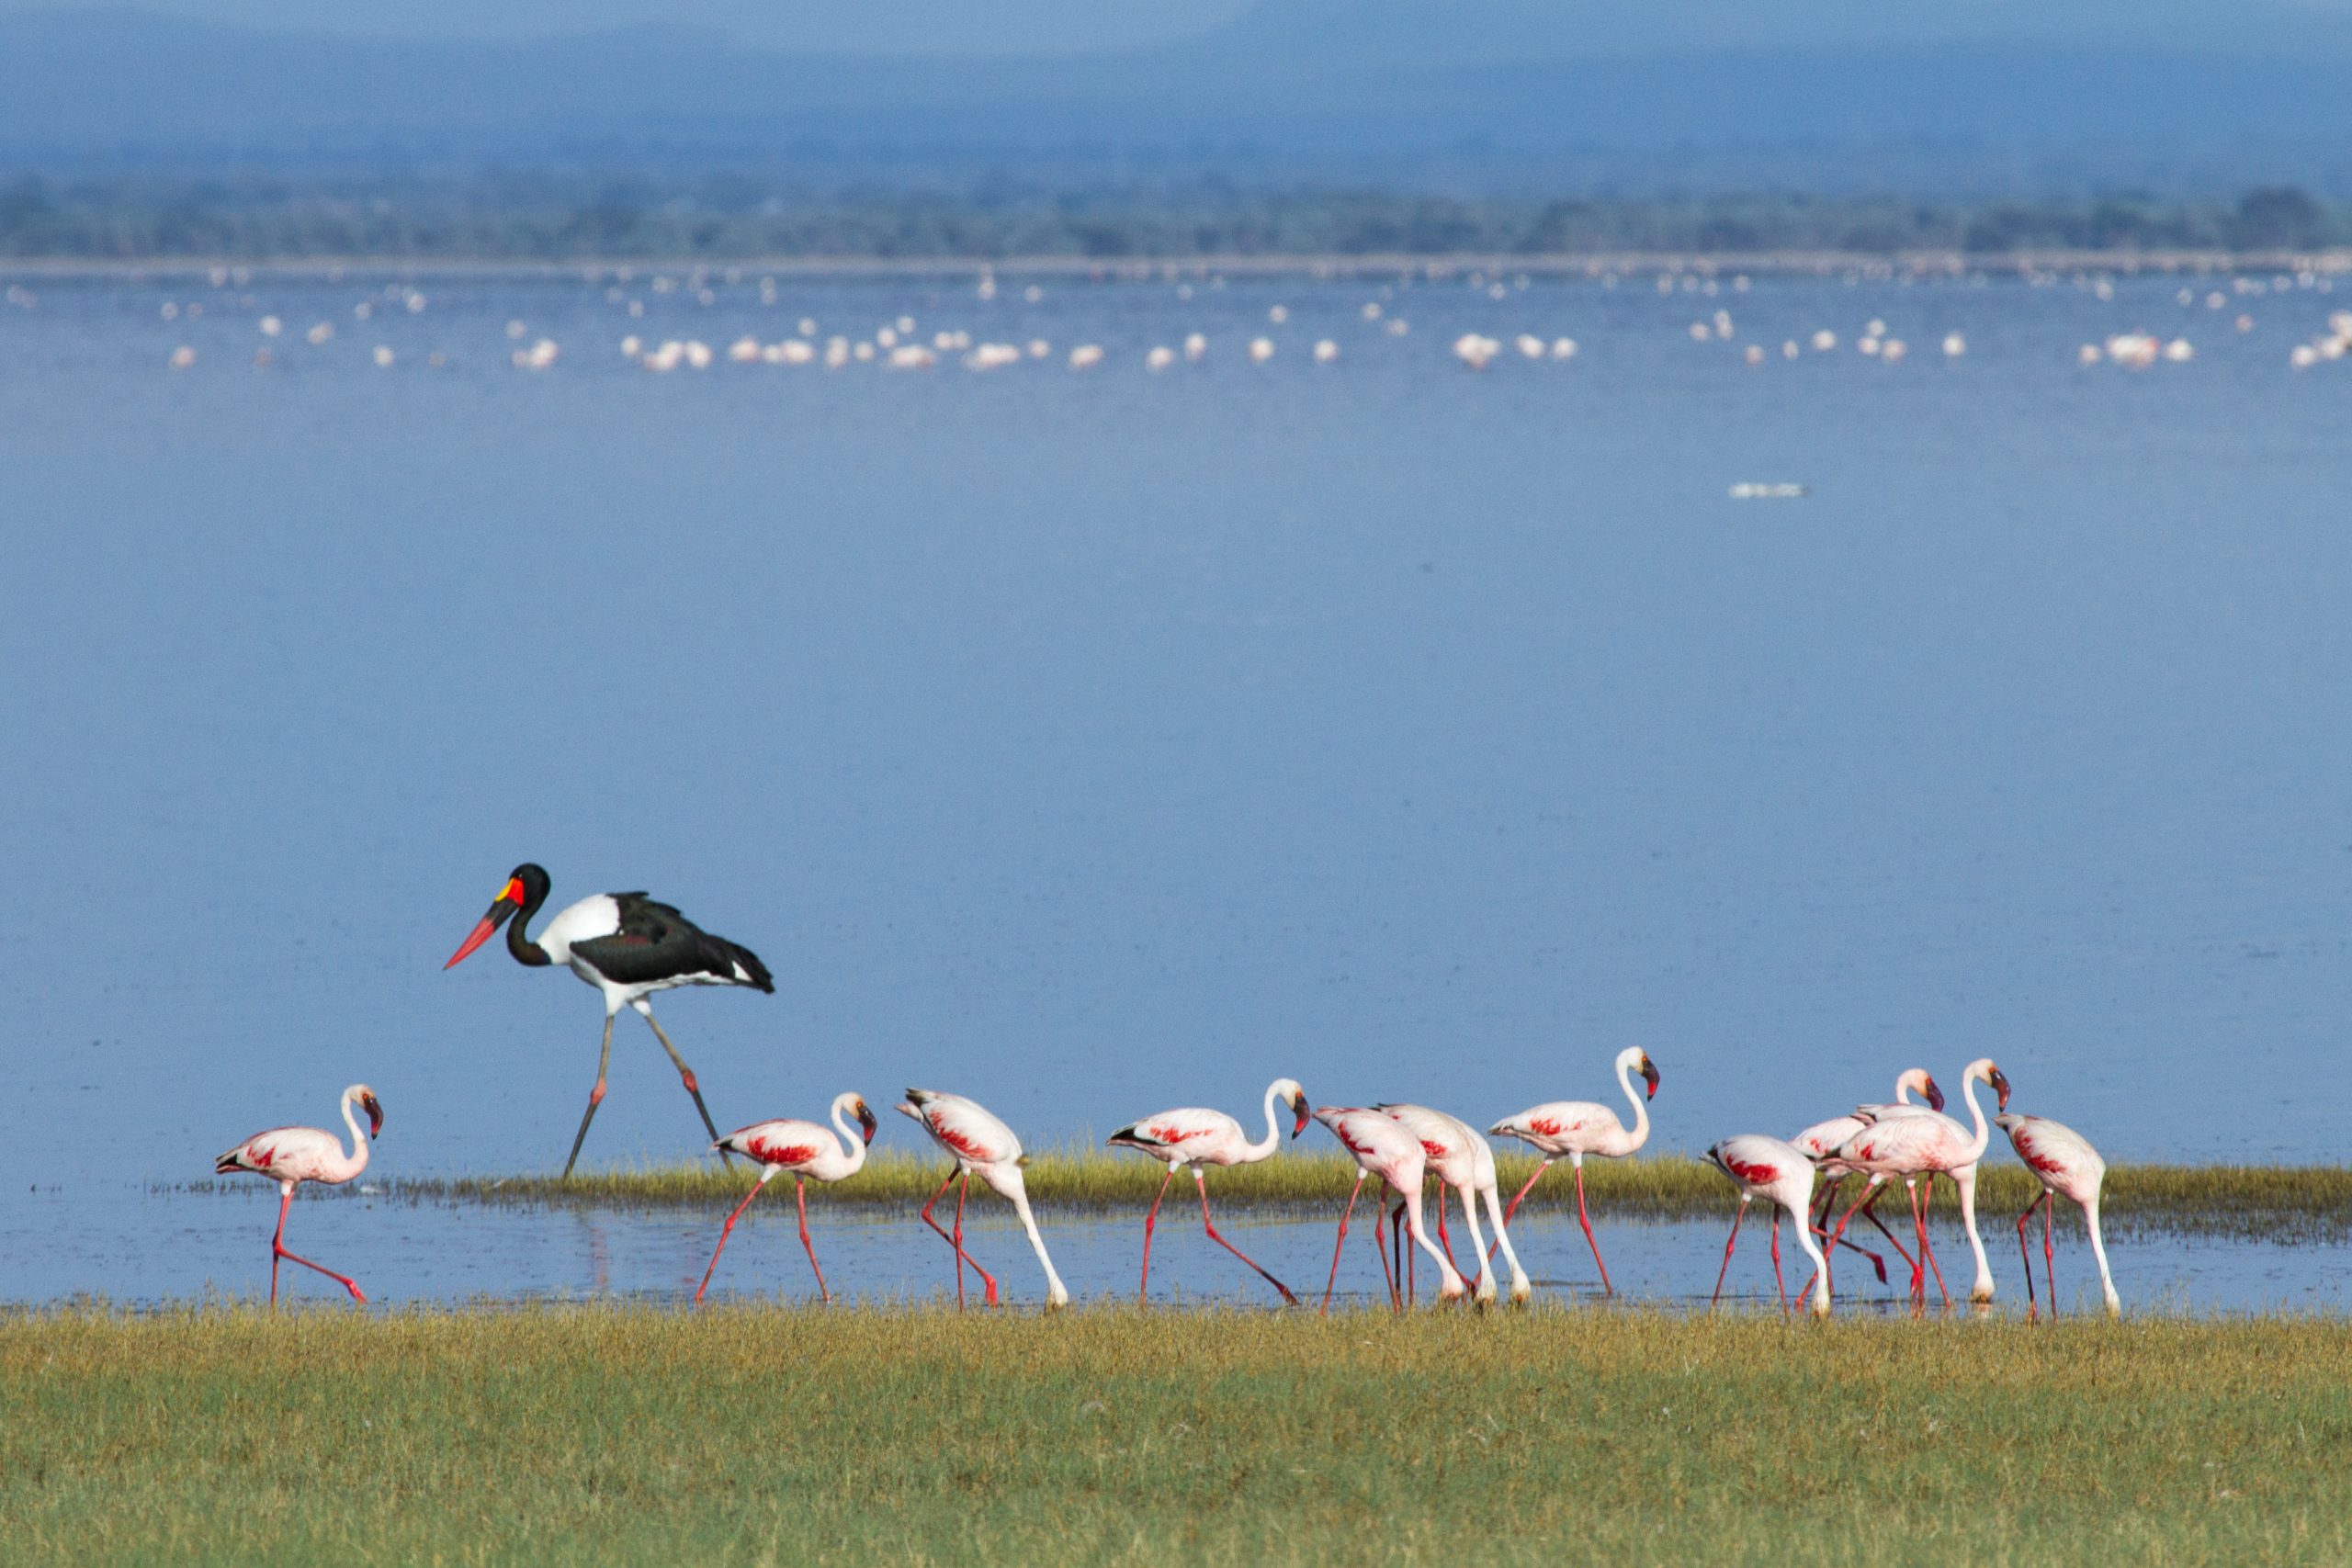 A group of flamingos spotted at Lake Manyara